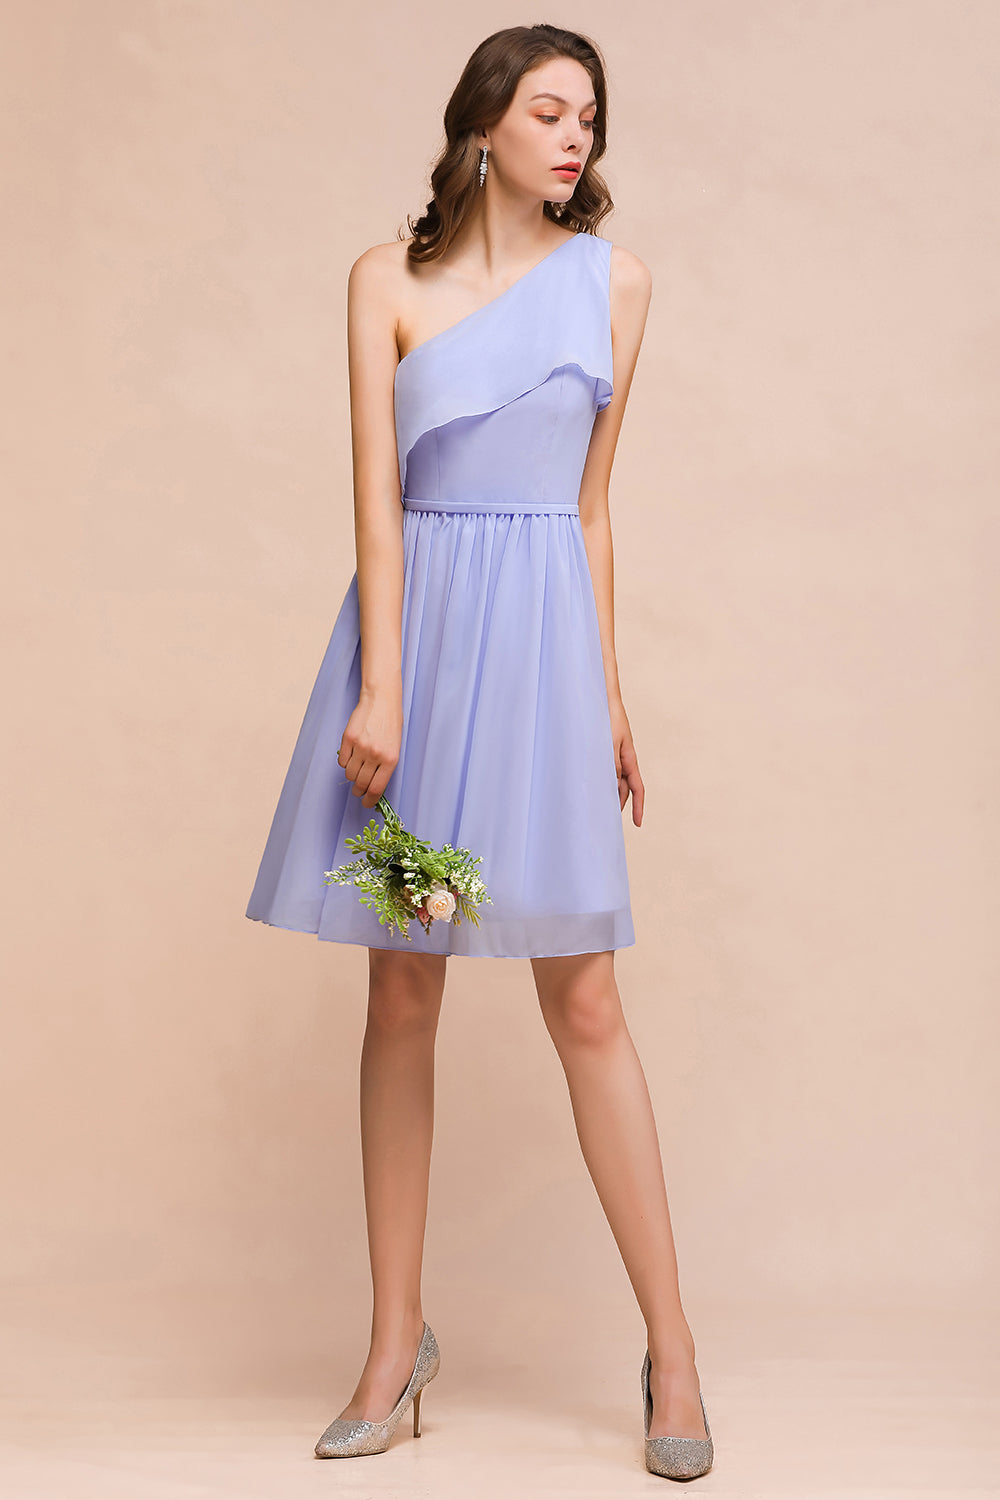 Suchen Sie Lavender Brautjungfernkleider Kurz online bei babyonlinedress.de. Chiffon Kleider Günstig für Brautjungfern maß geschneidert bekommen.